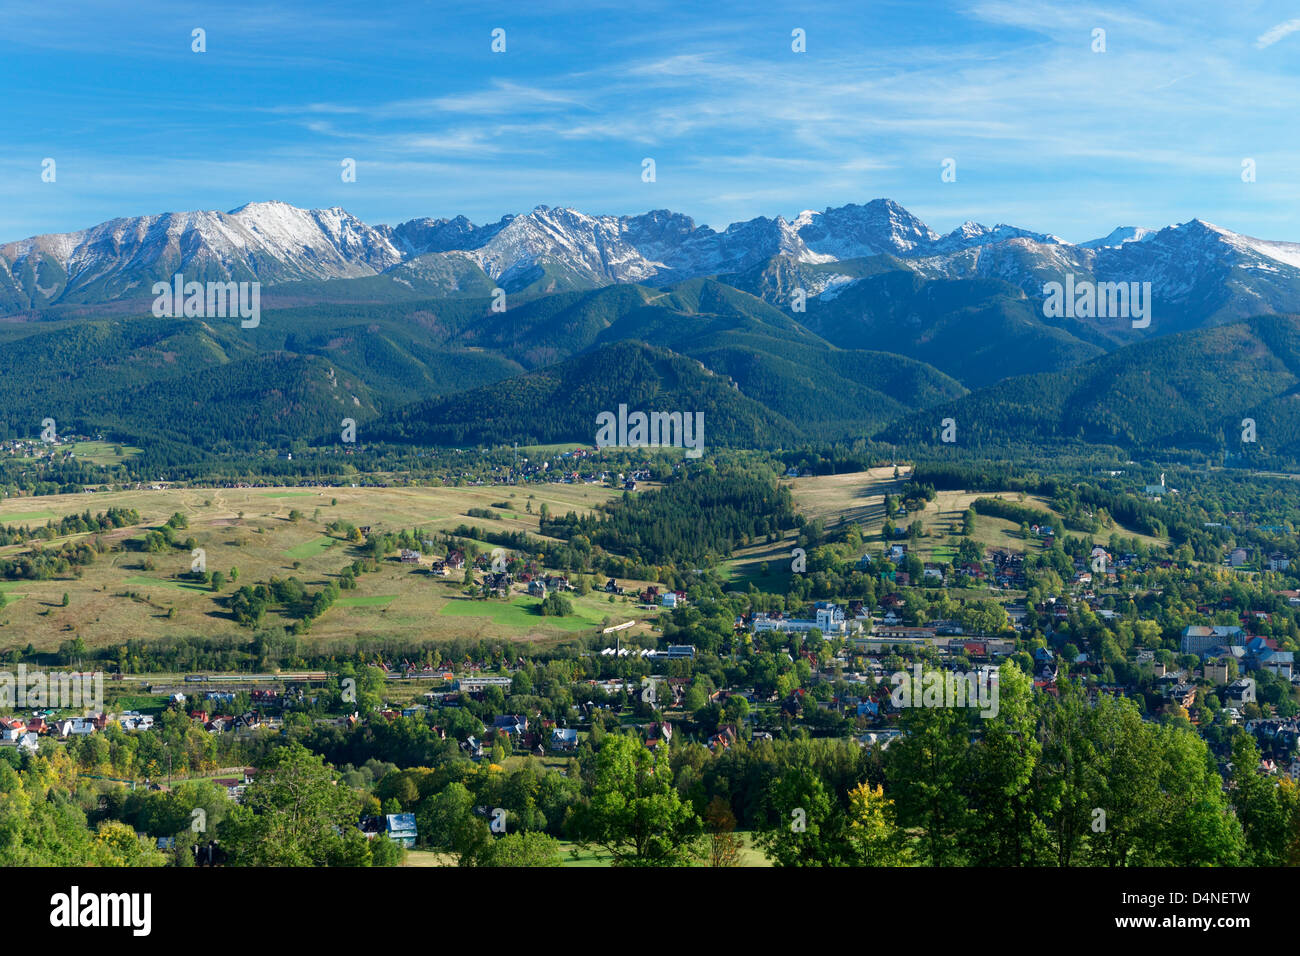 The High Tatra Mountains, Malopolska, Poland Stock Photo